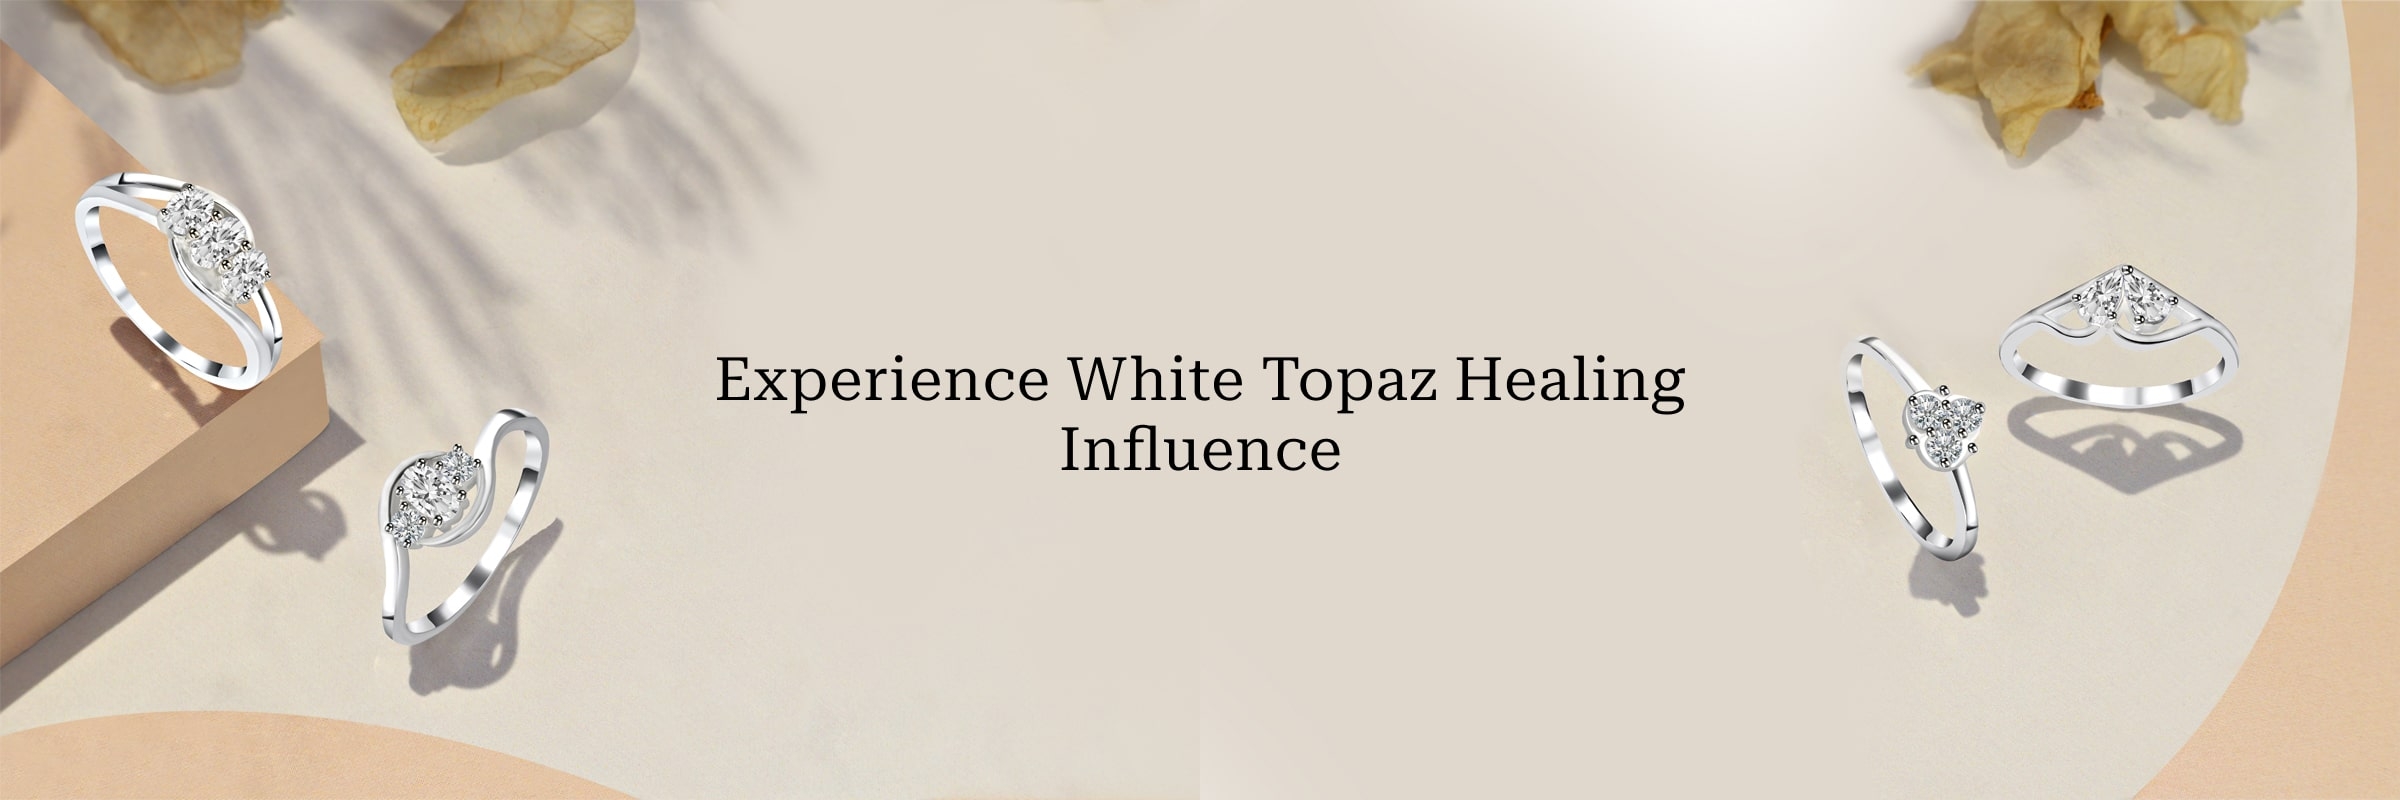 Healing Properties of White Topaz